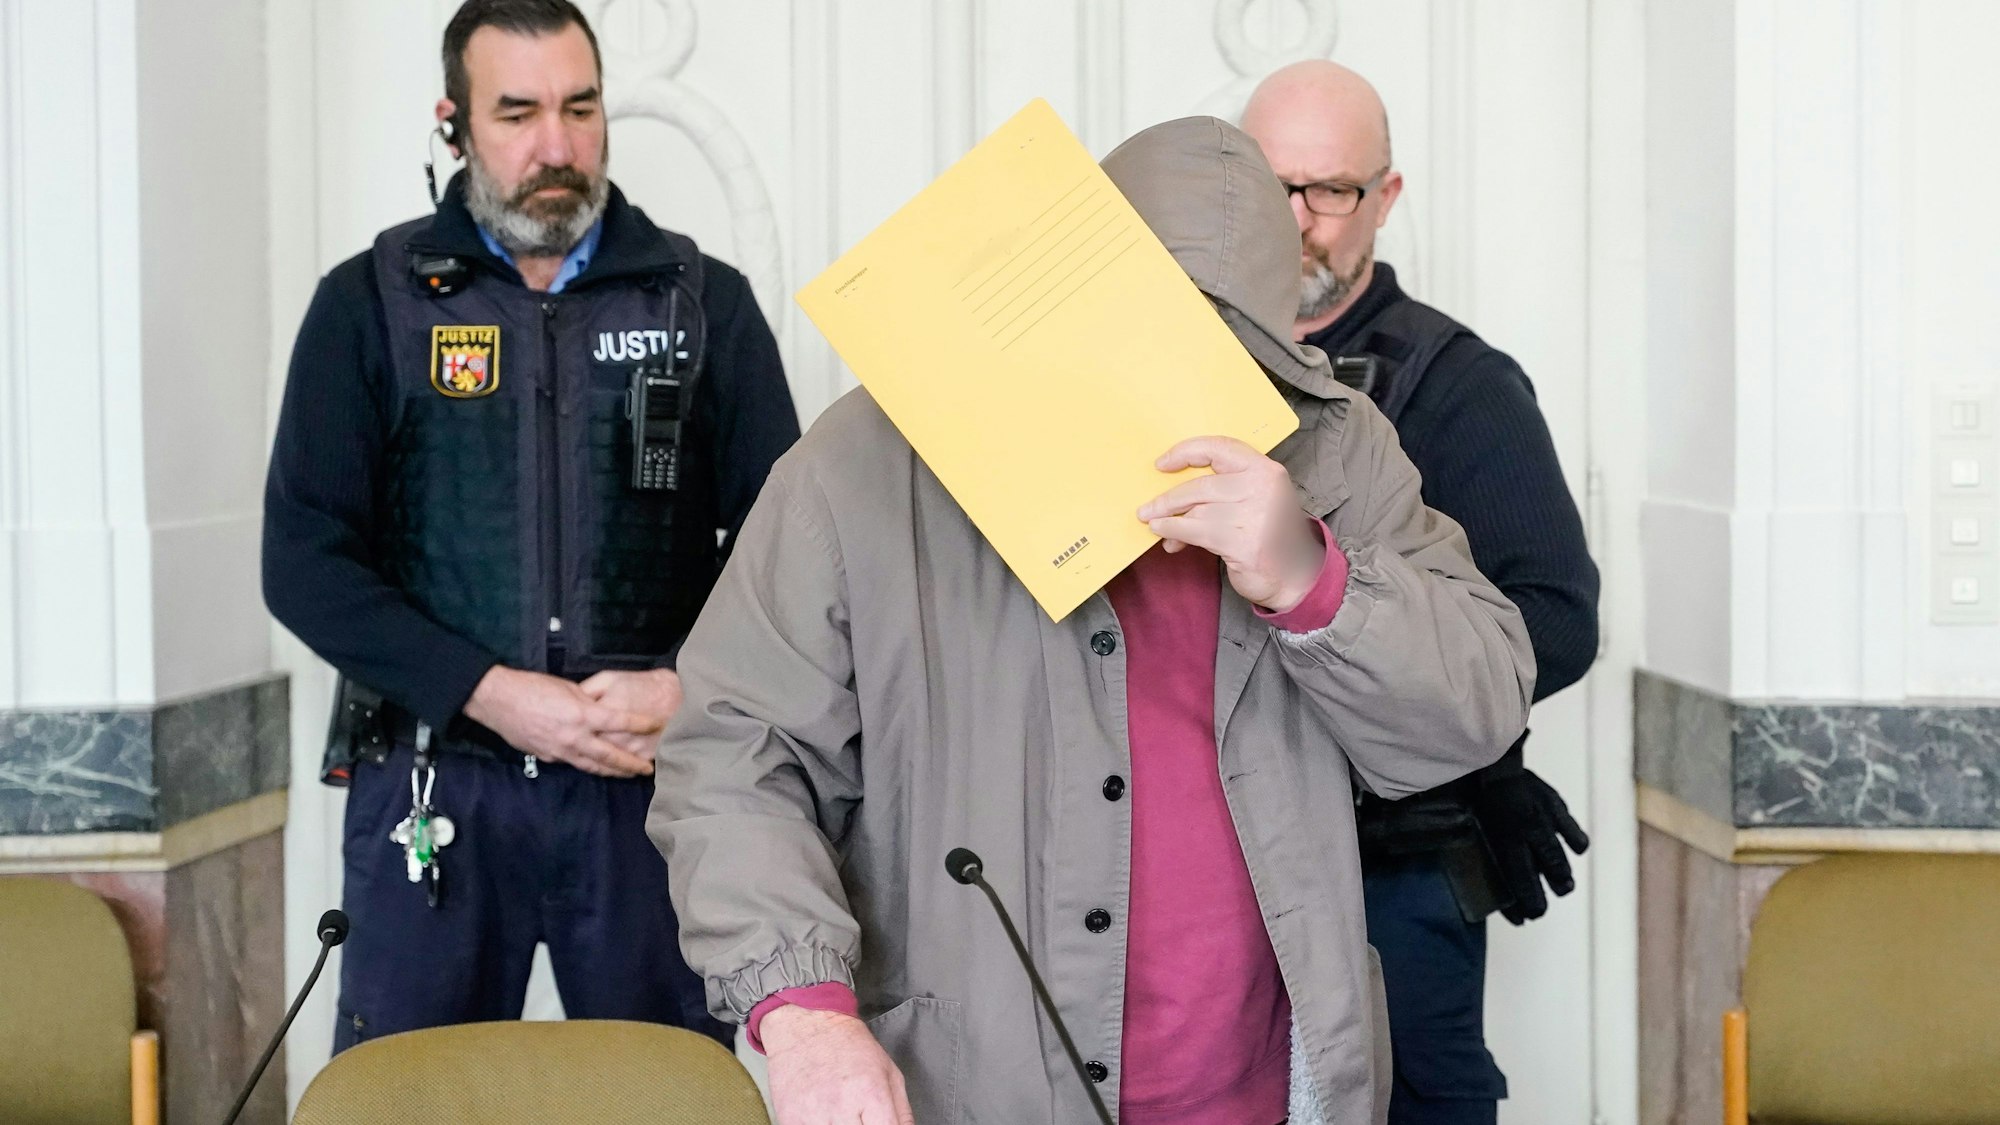 Der Angeklagte steht im Gerichtssaal und verdeckt sein Gesicht mit einer Mappe.